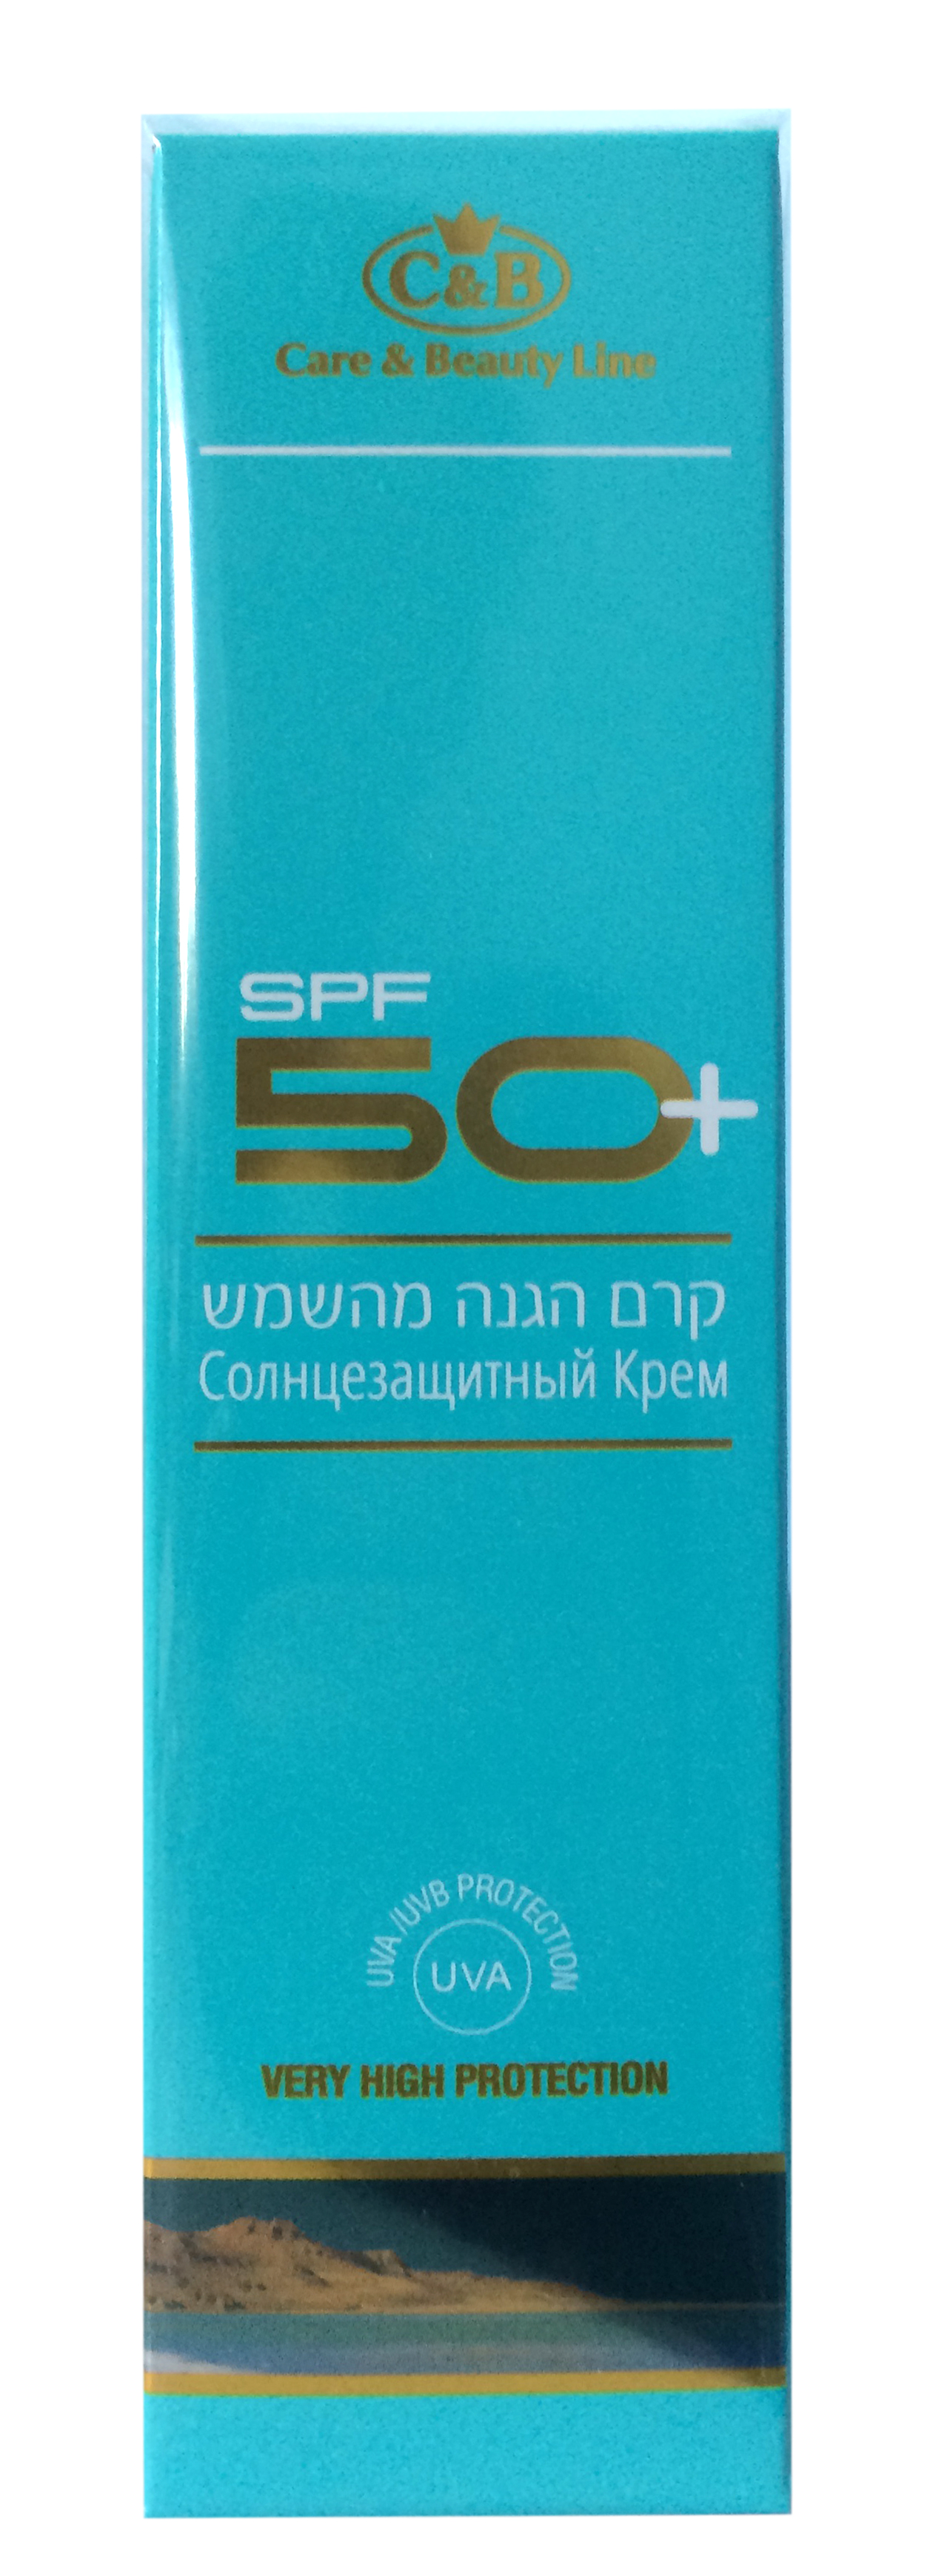 Крем для загара в солярии Care & Beauty Line SPF 50+